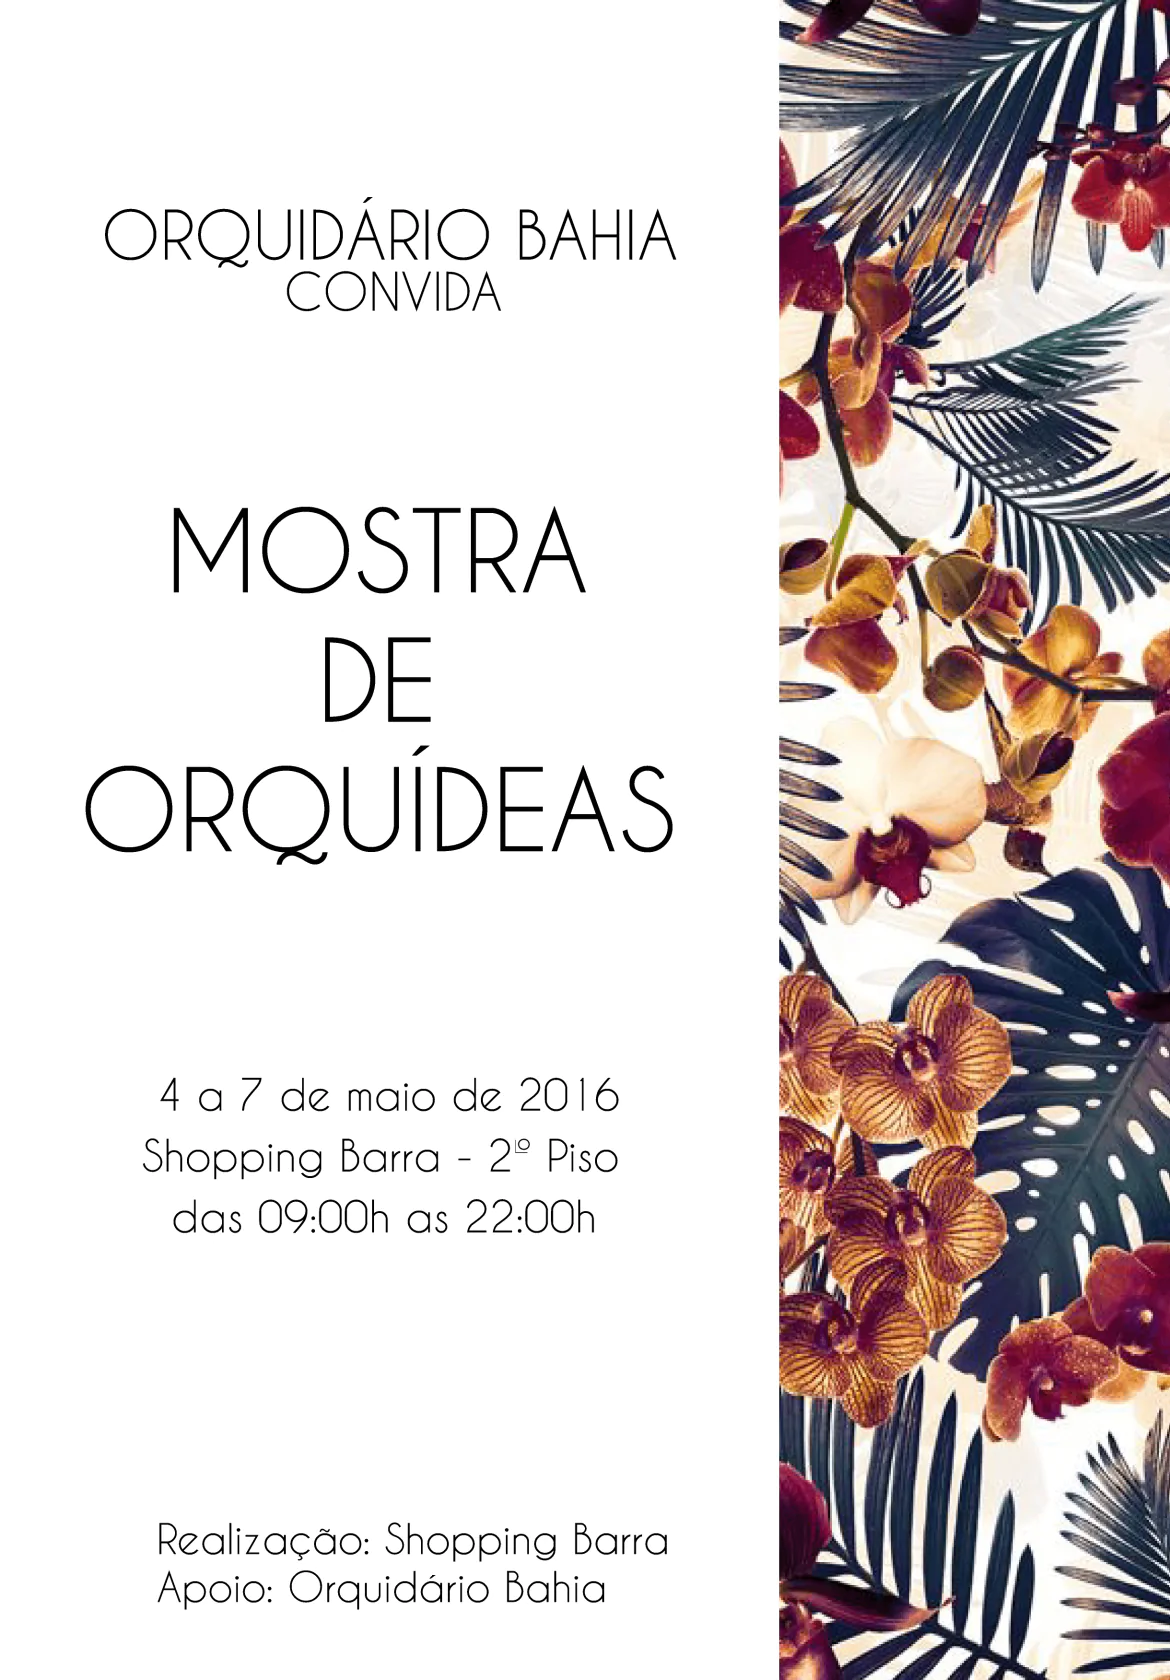 Mostra de Orquídeas no Shopping Barra